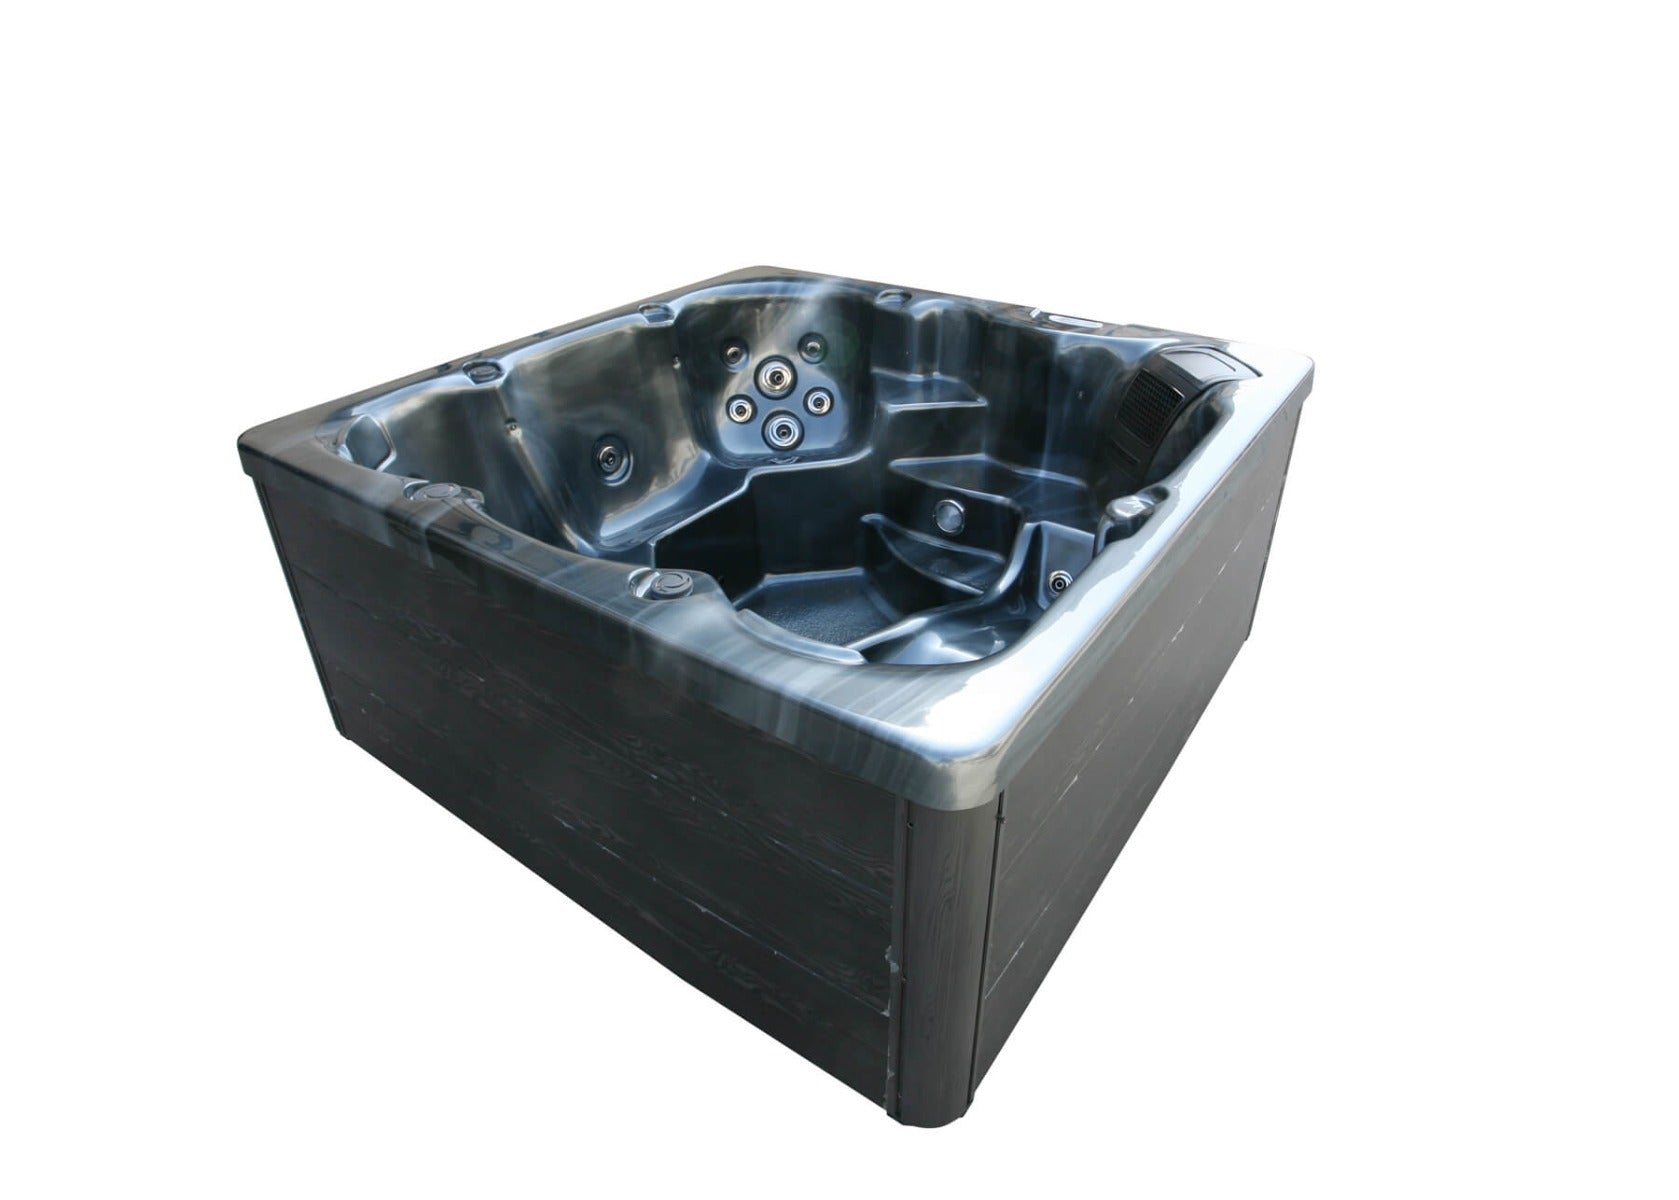 H2O 2500 Series Plug & Play hot tub